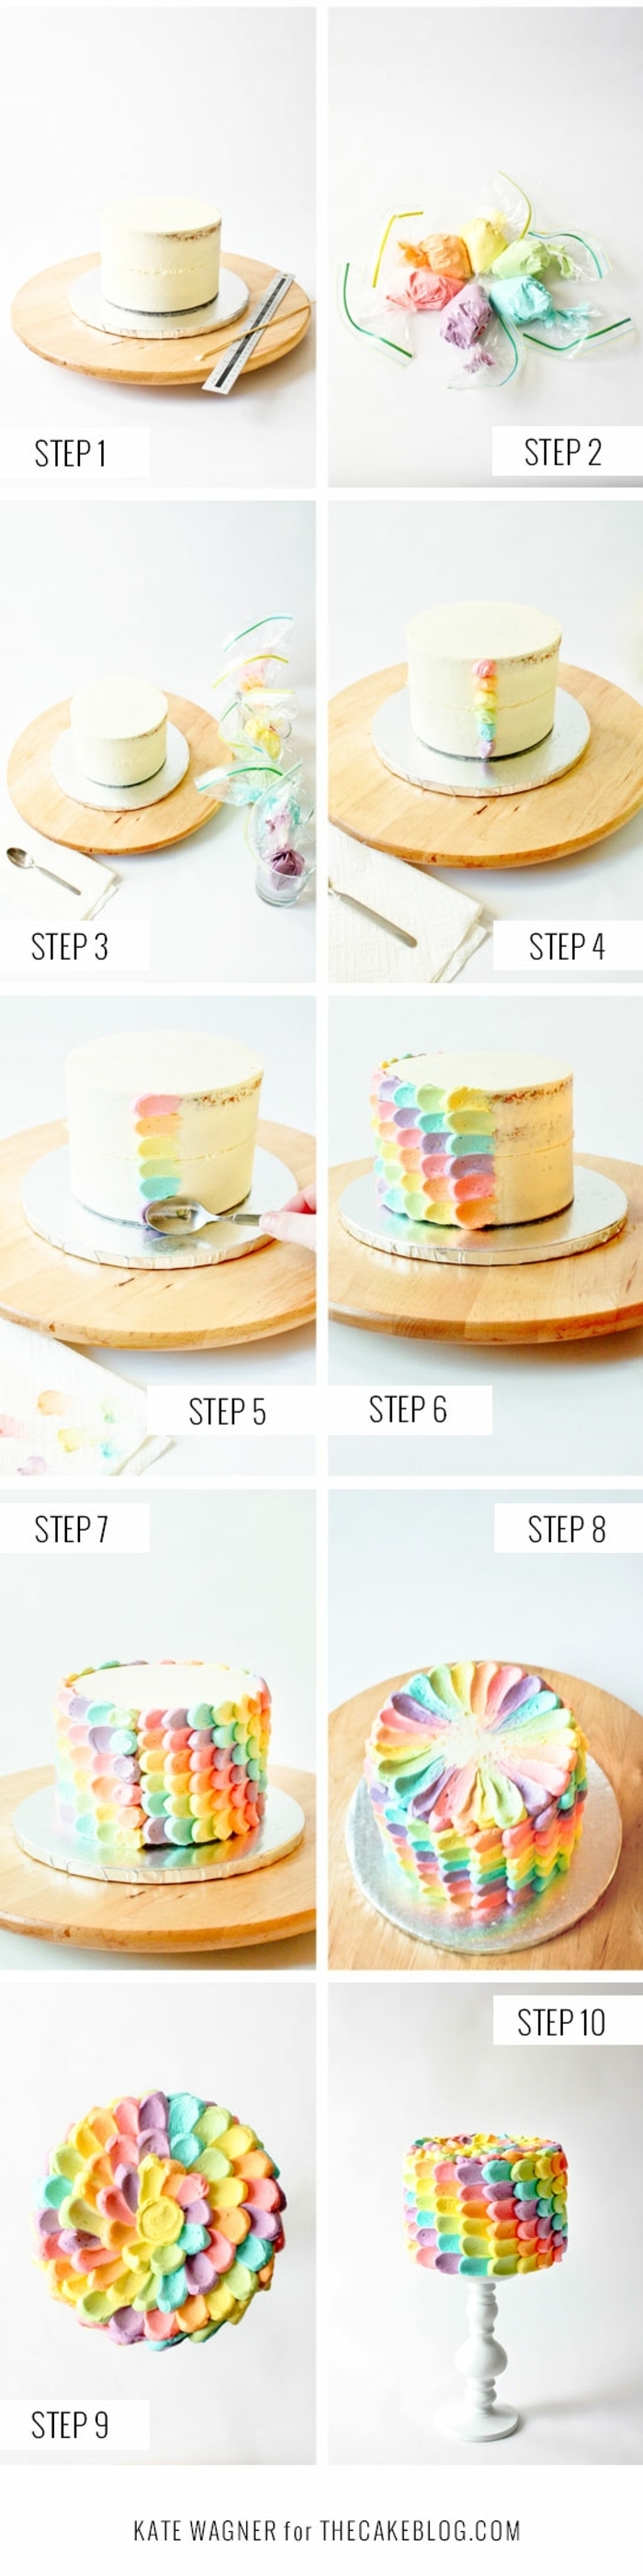 pasos sobre como decorar una tarta con manga pastelera, ideas de tartas ricas y faciles de preparar para un cumpleaños